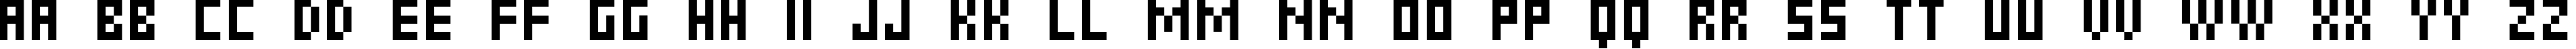 Пример написания английского алфавита шрифтом 6px2bus